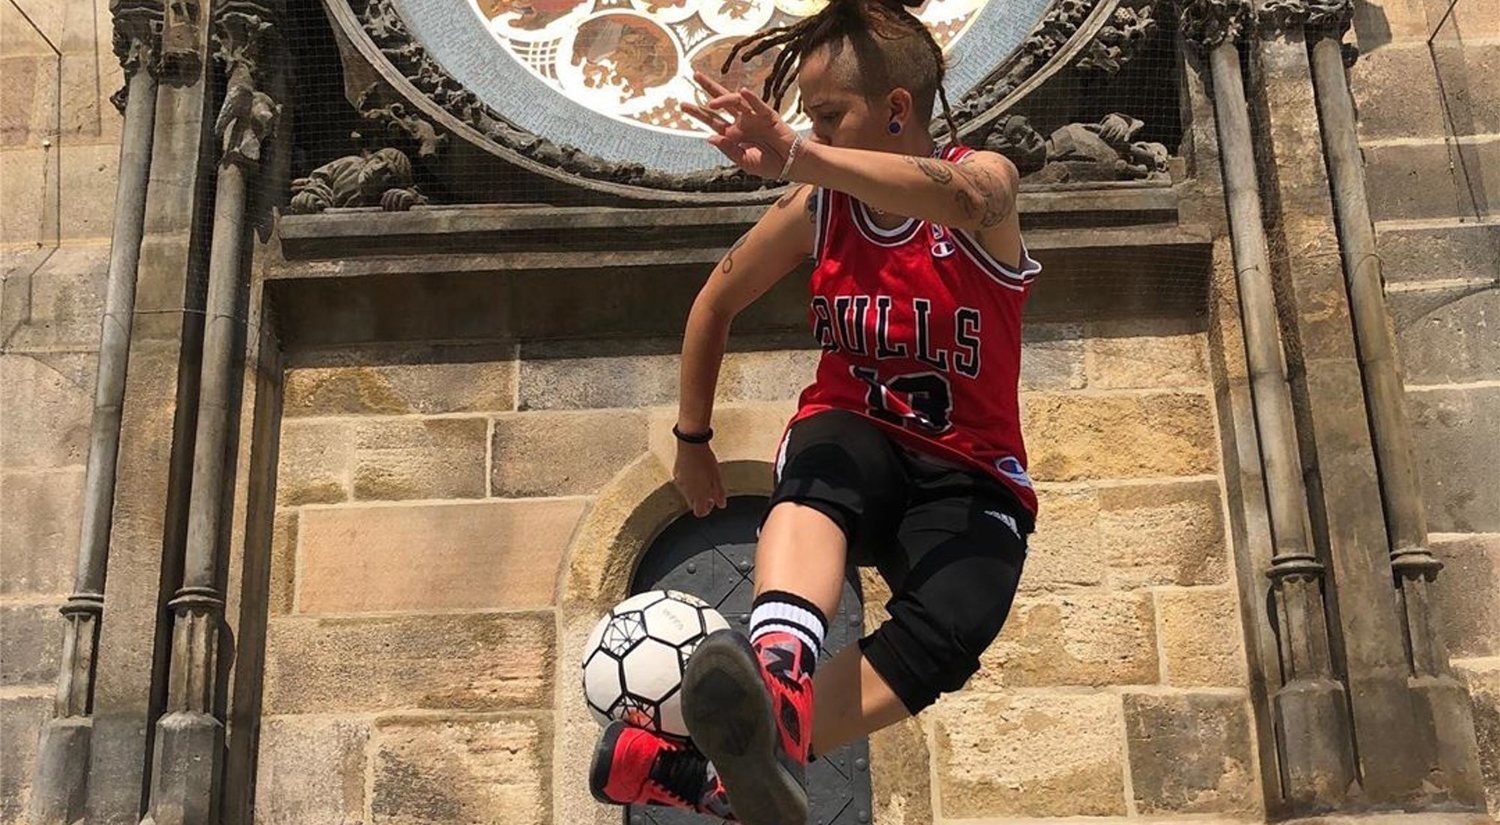 Paloma Pujol, campeona de footbag y fútbol freestyle: "Cada vez hay más chicas freestylers"